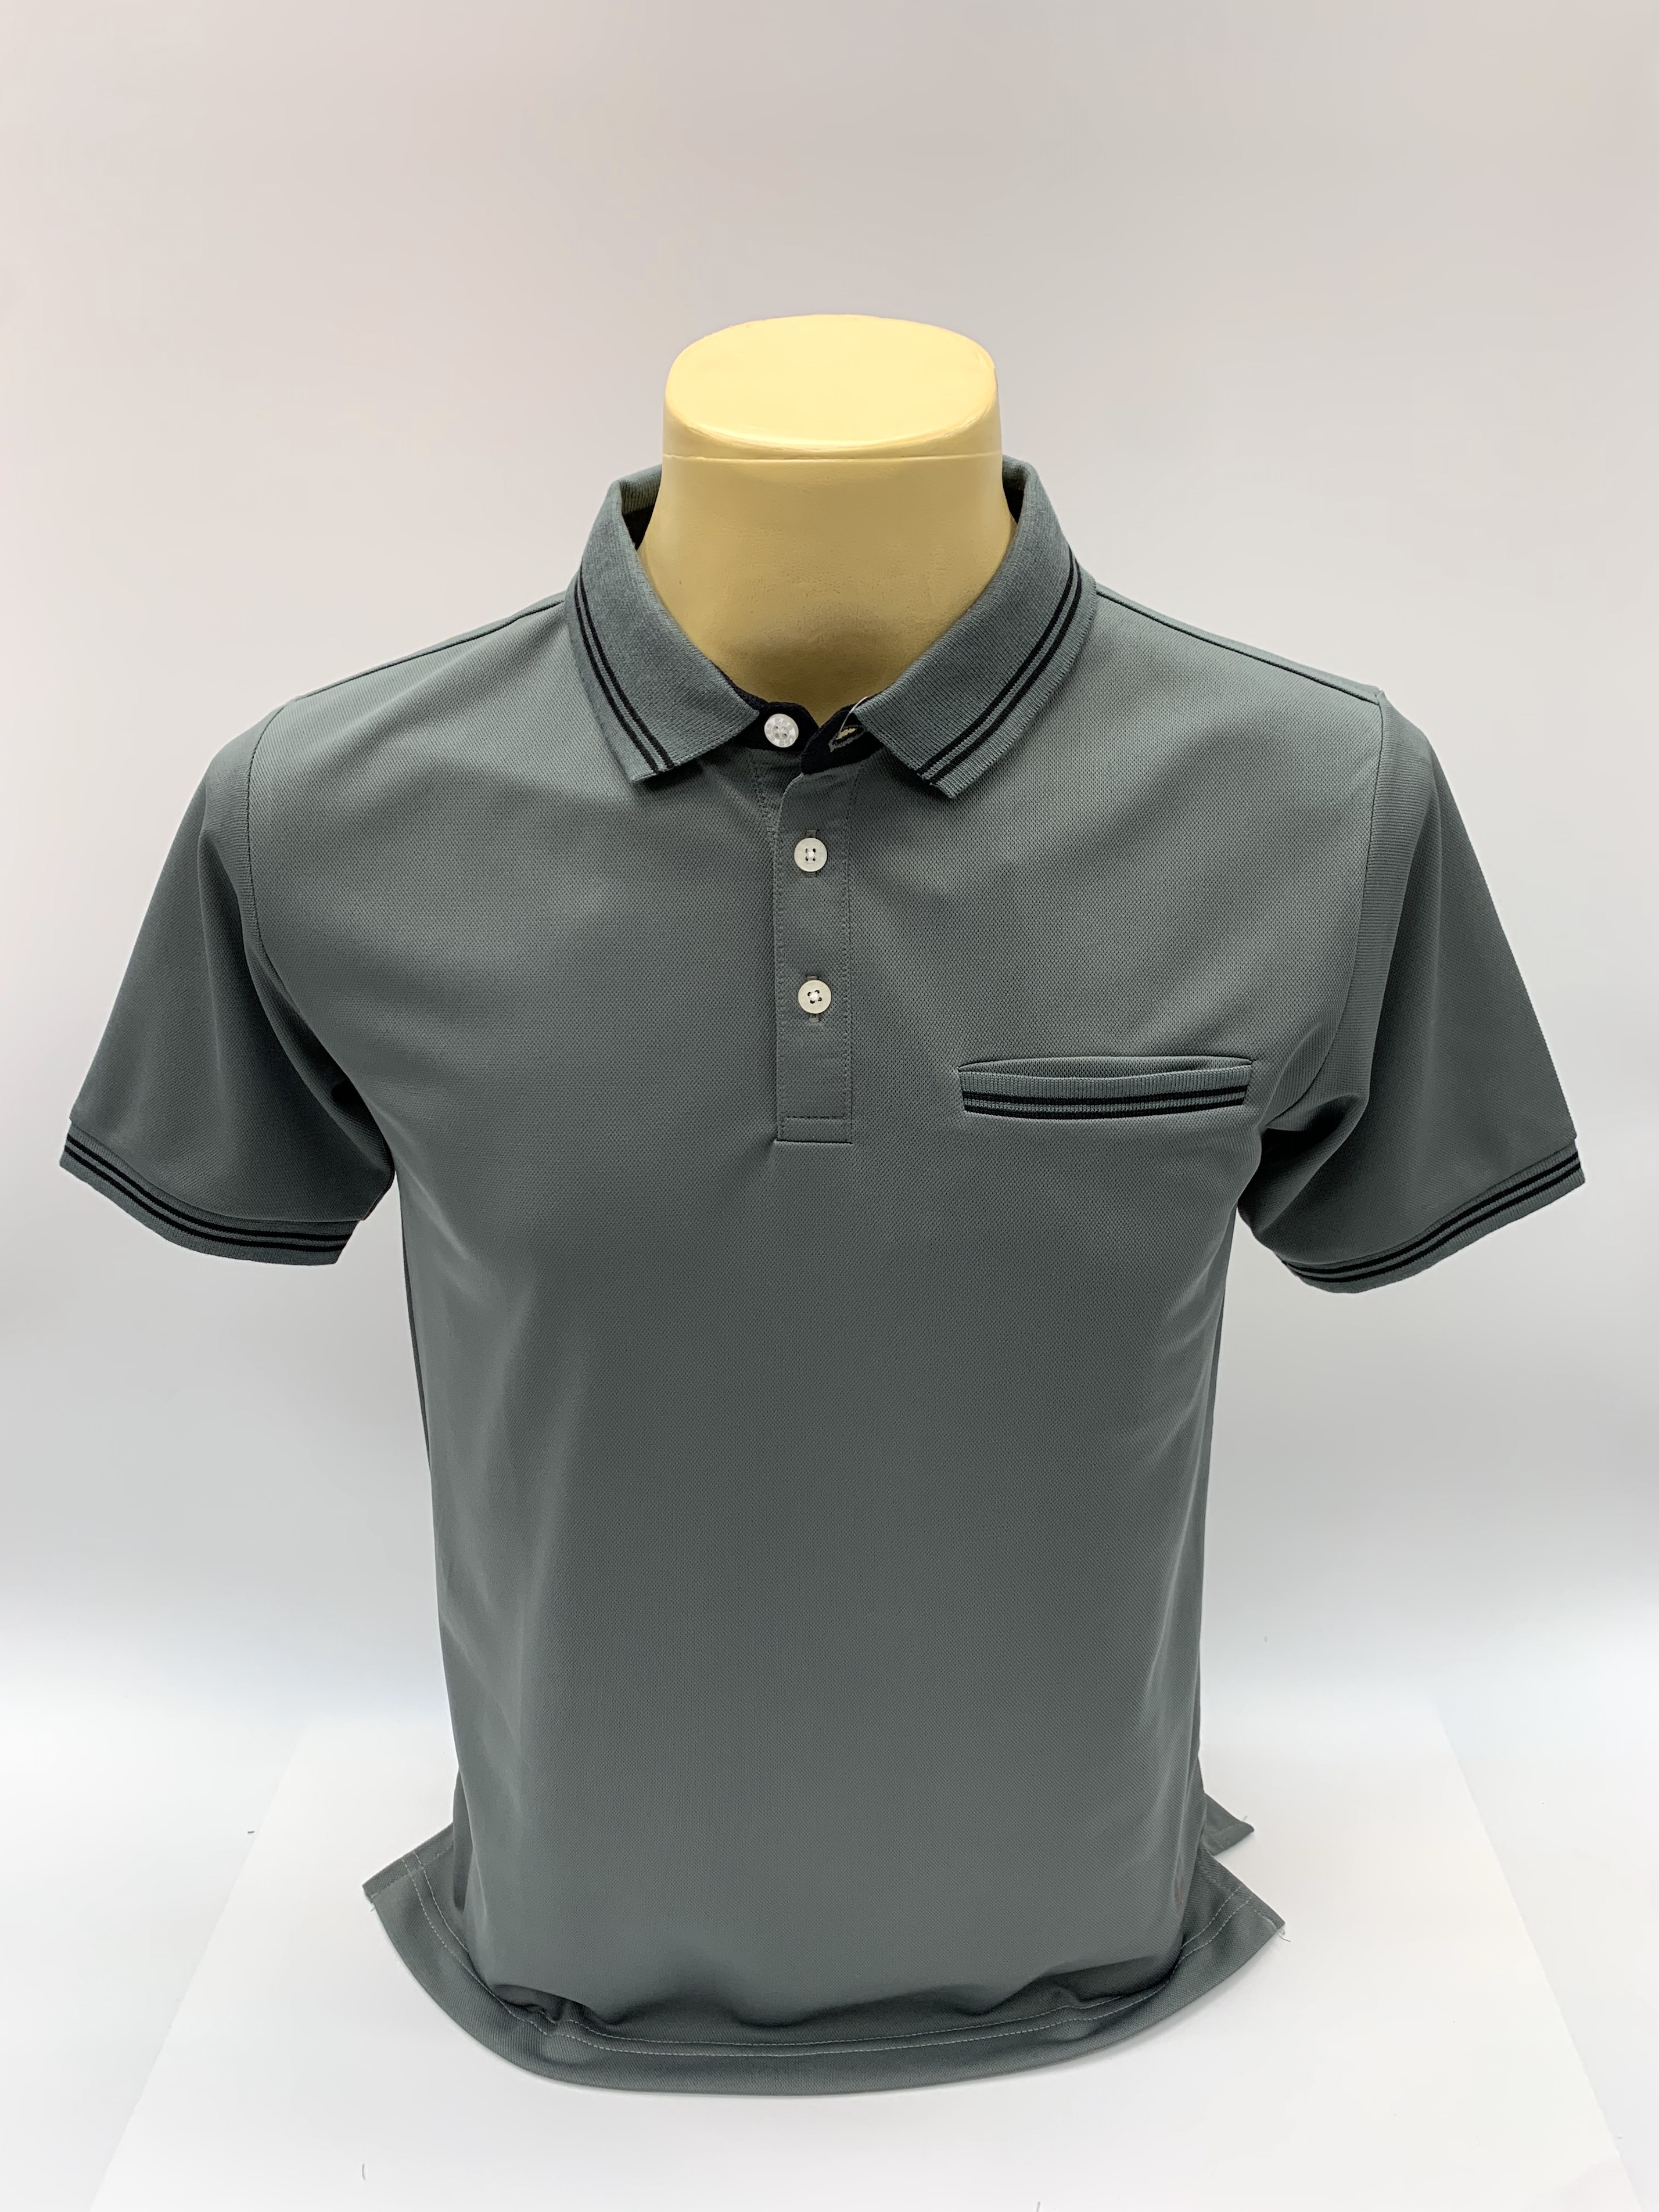 เสื้อคอโปโลแขนสั้น ผ้าดรายเทค (Dry Technology) มีกระเป๋าที่อกยี่ห้อ C59 AIR # 084 เสื้อคอปก เสื้อผู้ชาย เสื้อมีปก เสื้อสีพื้น เสื้อโปโล Kingberry Shop